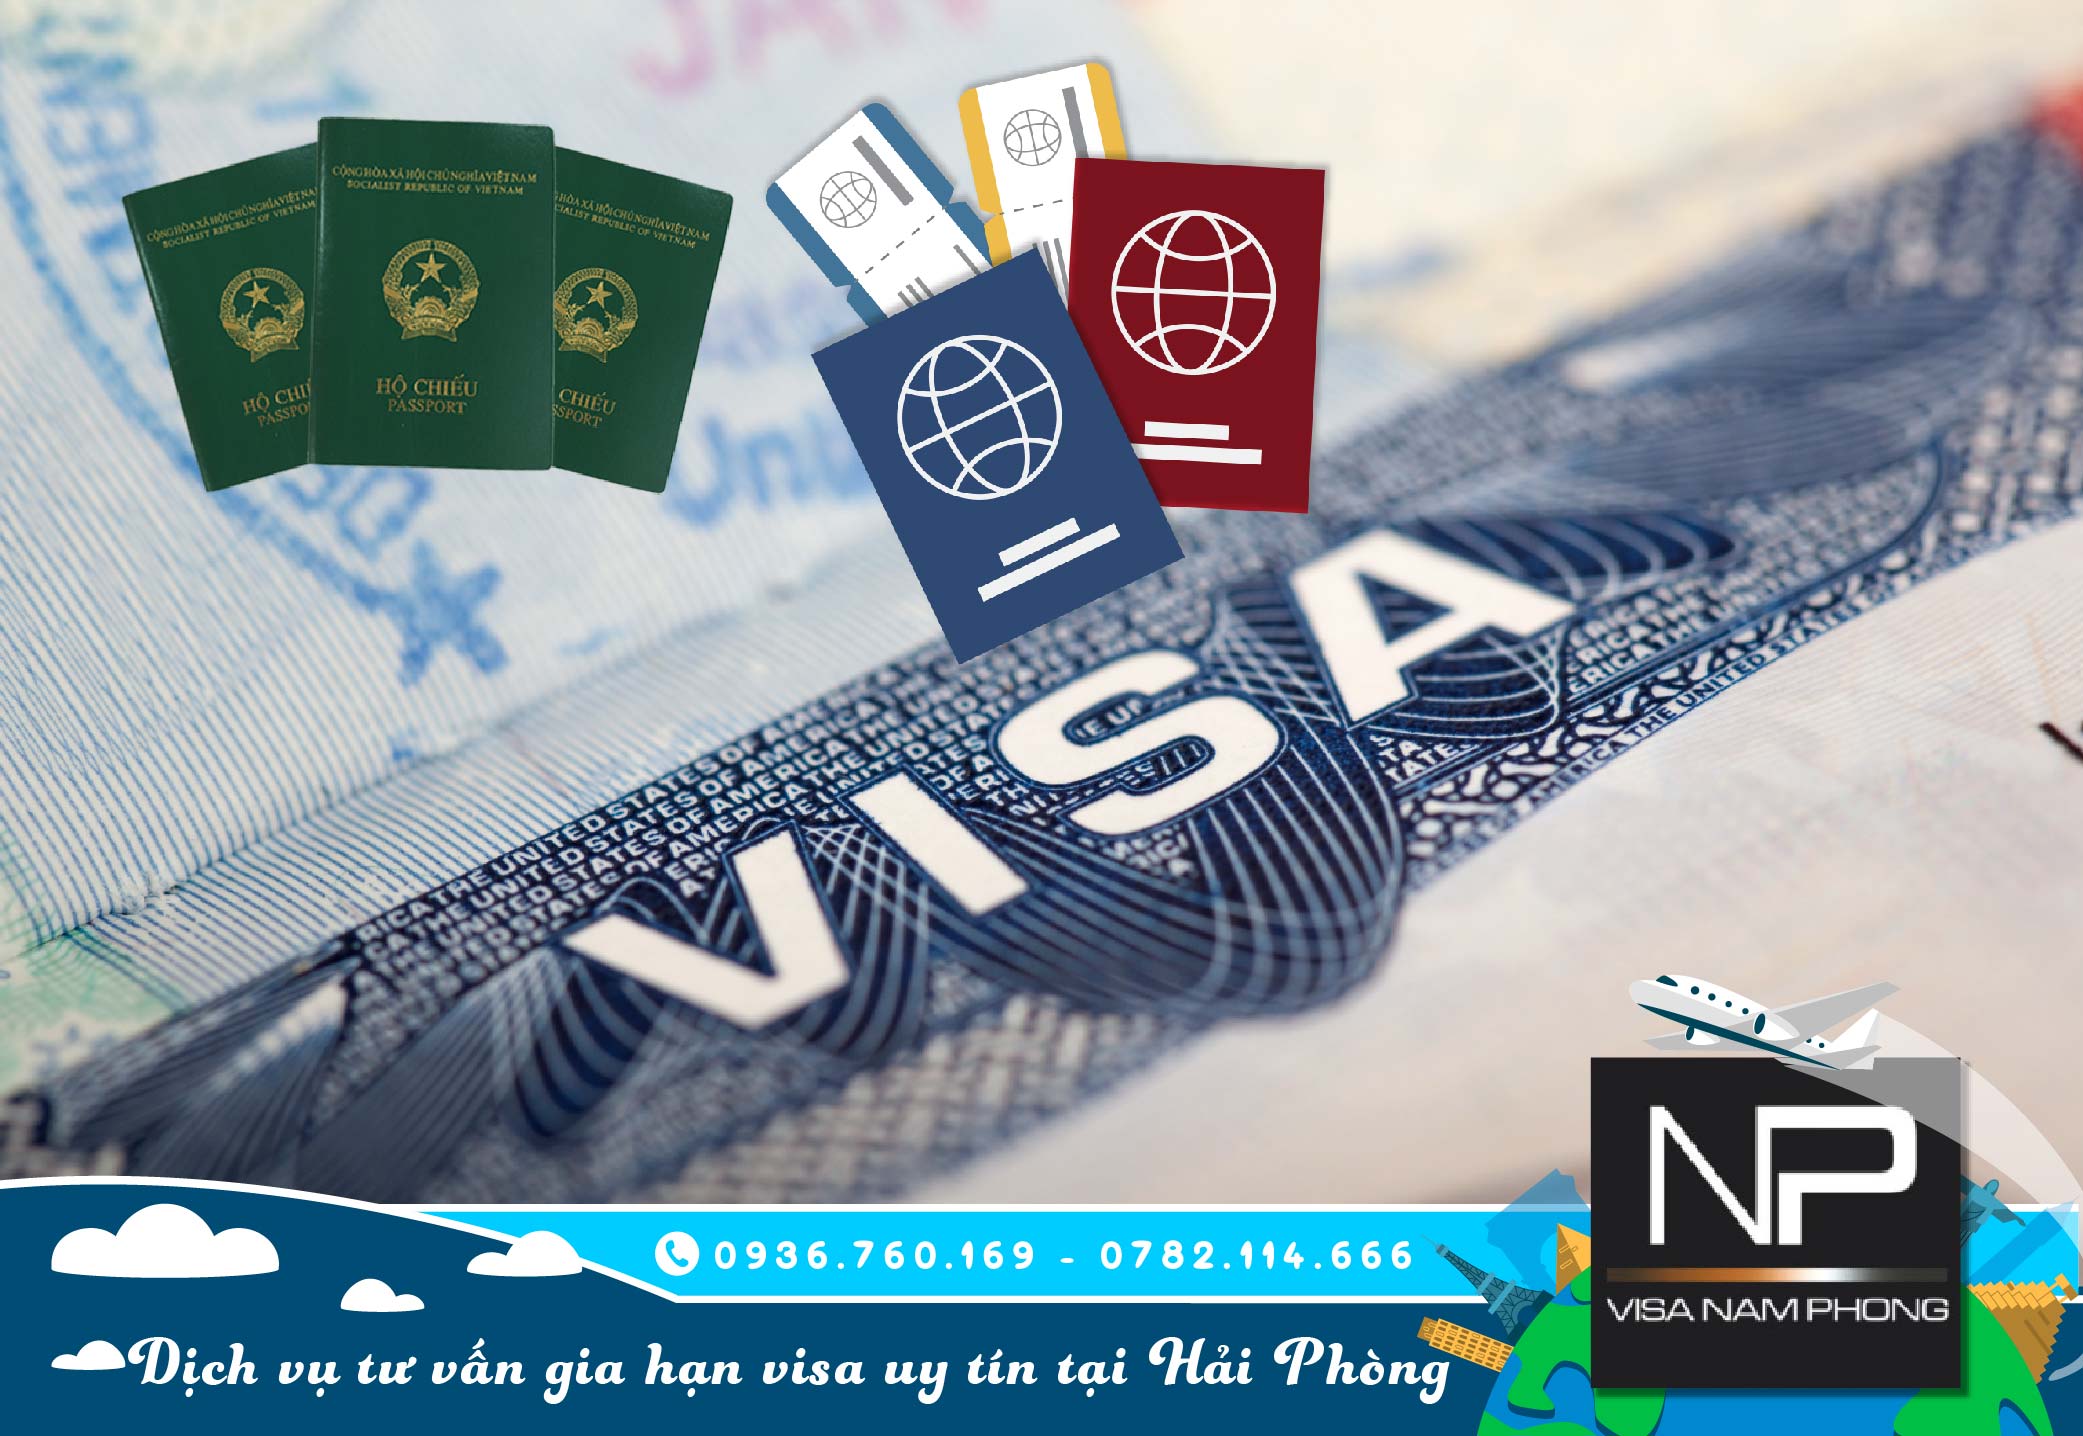 Dịch vụ tư vấn gia hạn visa uy tín tại hải phòng